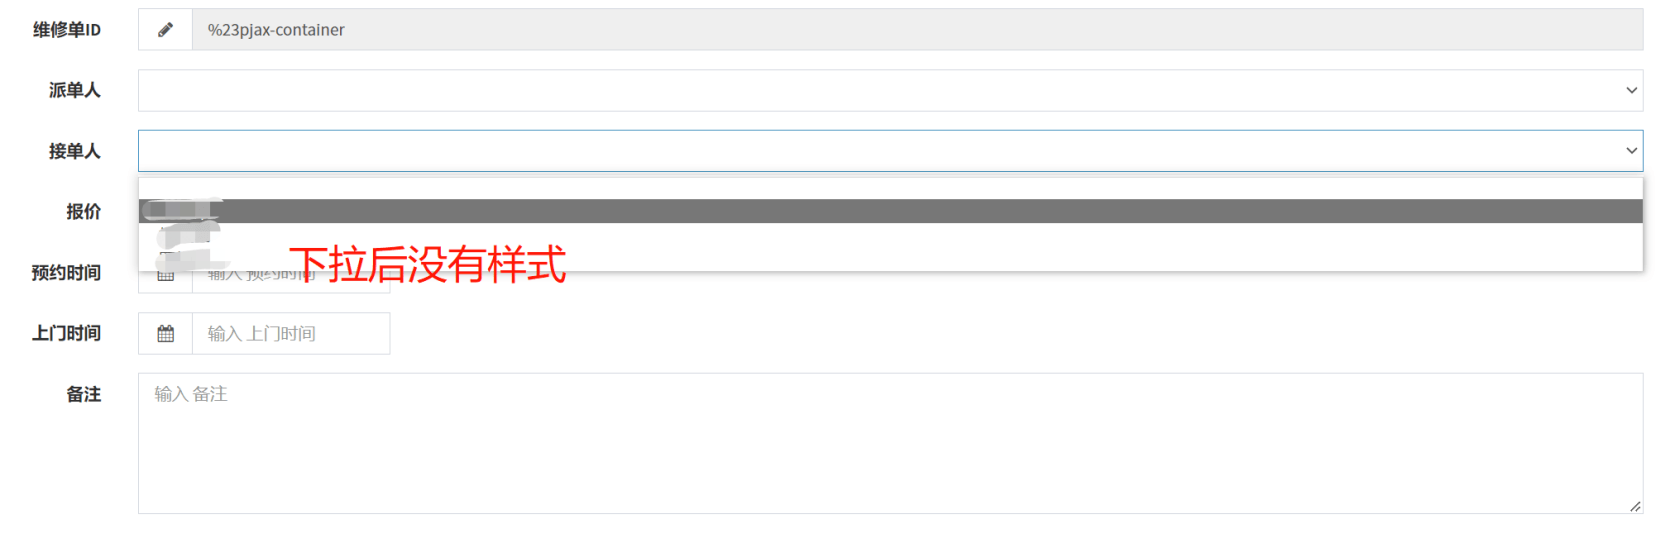 Laravel admin中，列表中有编辑和派单按钮，点击派单按钮，其表单页面不显示组件的样式